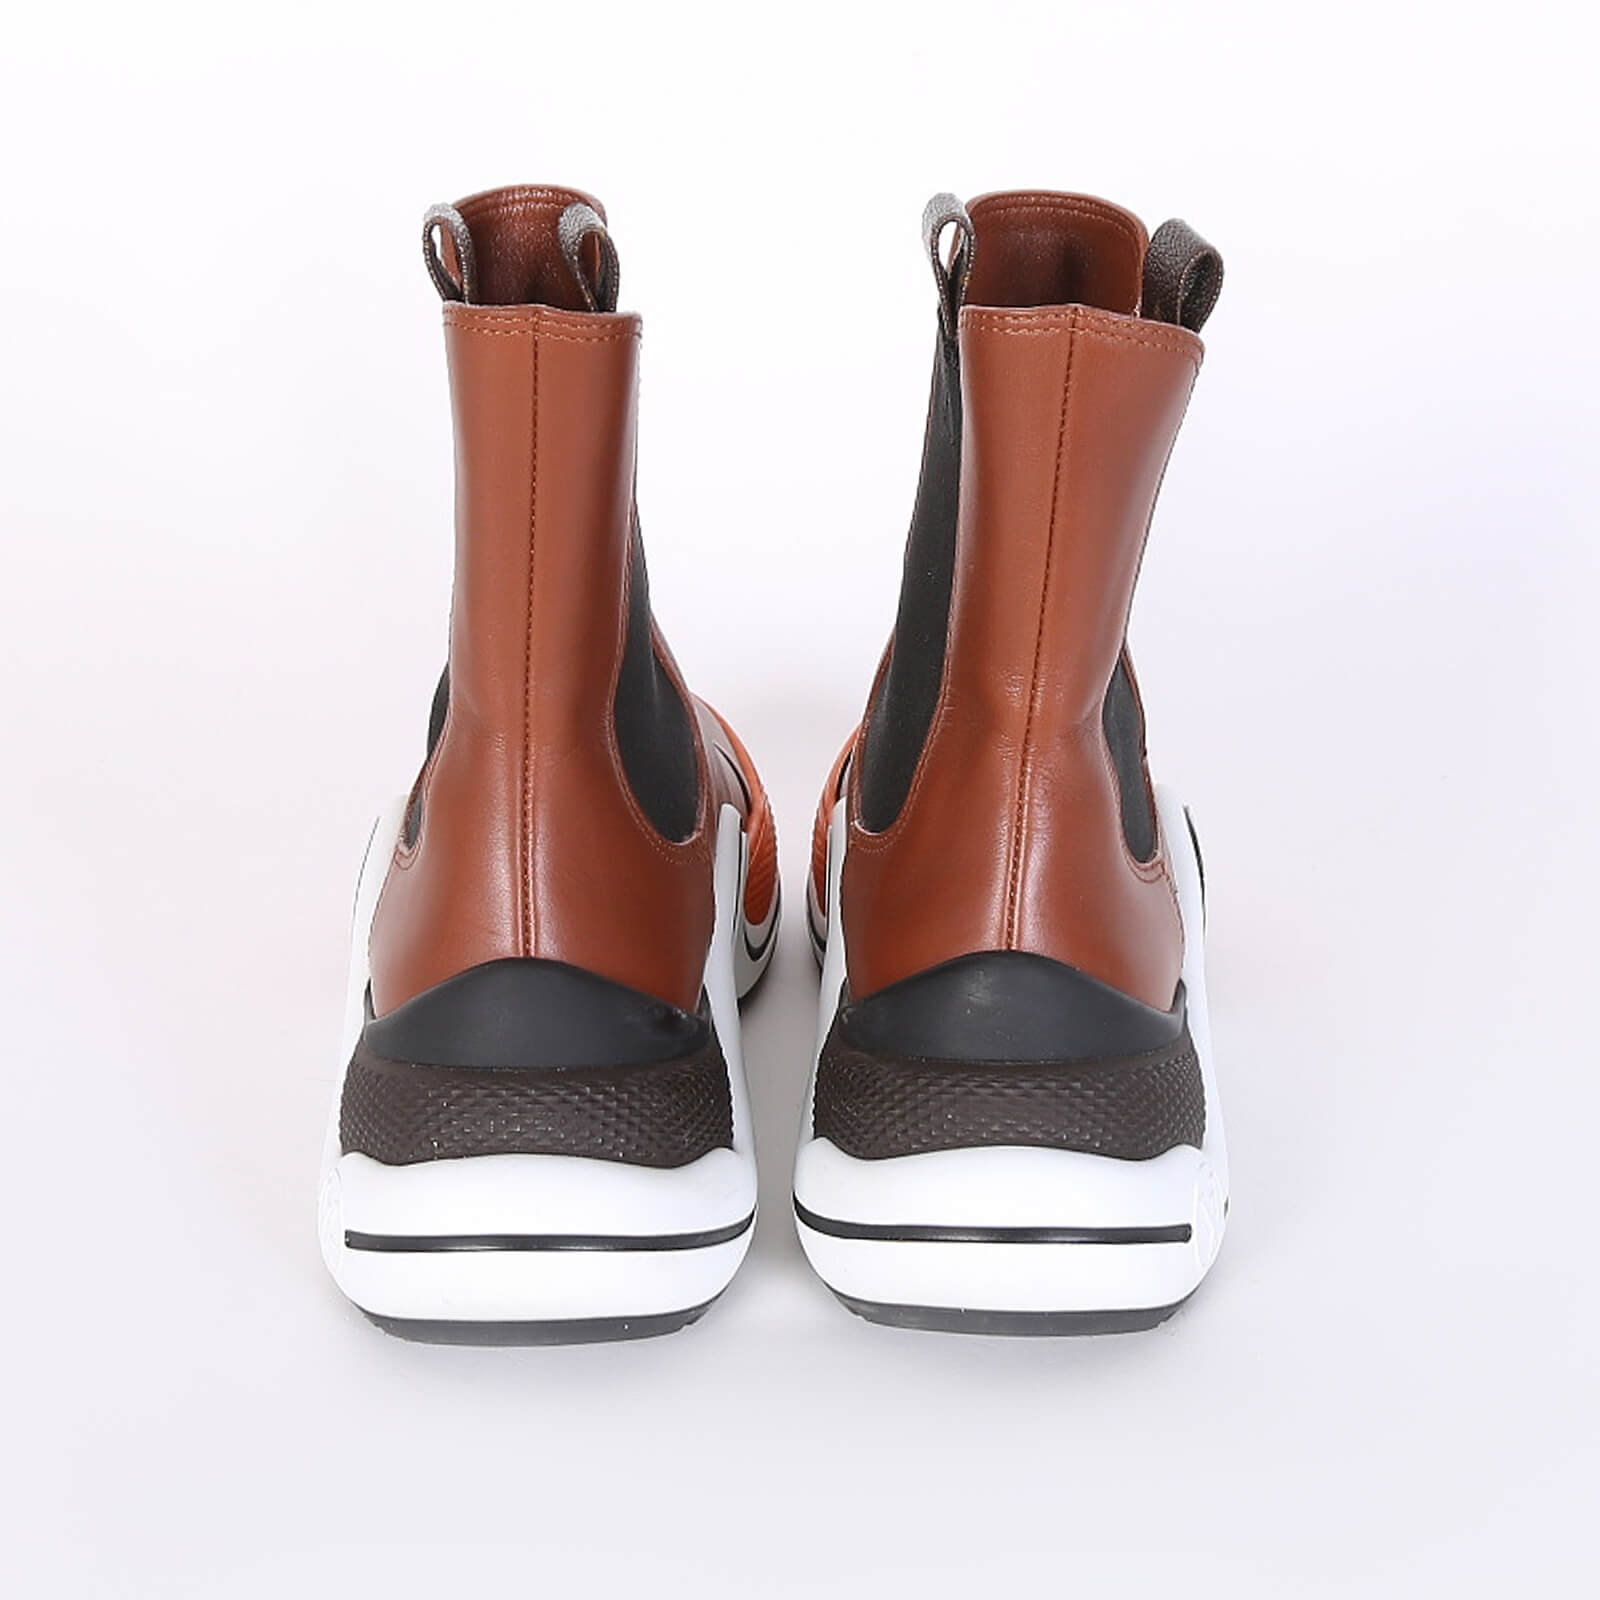 Archlight wellington boots Louis Vuitton Khaki size 39 EU in Rubber -  35196299